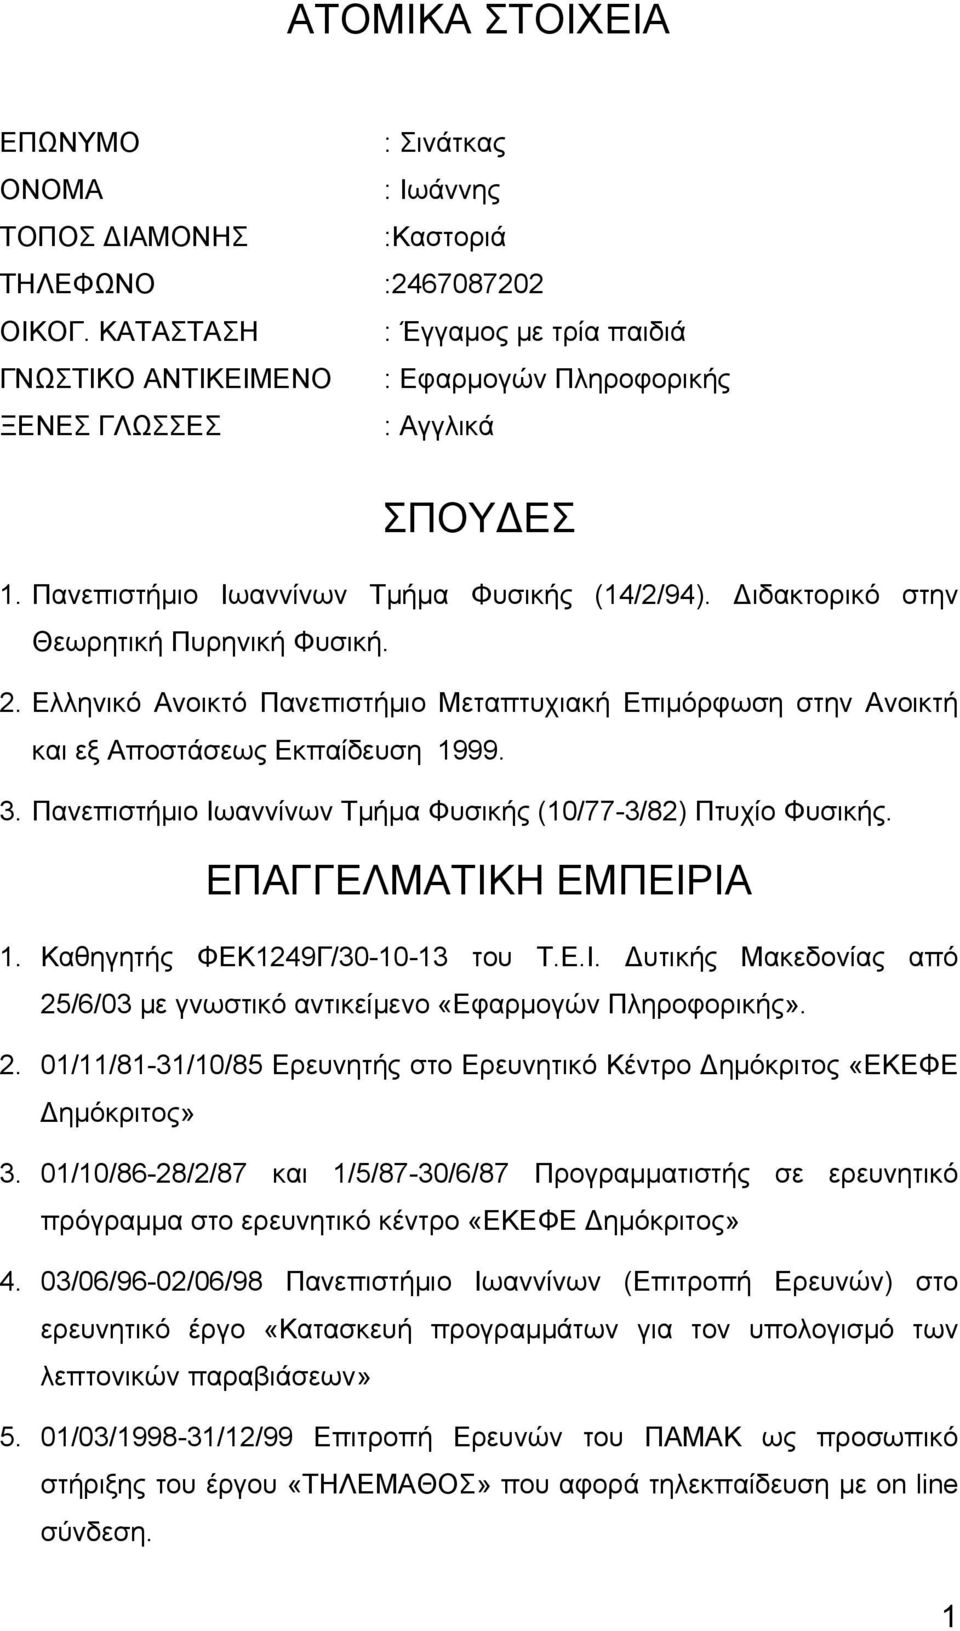 Διδακτορικό στην Θεωρητική Πυρηνική Φυσική. 2. Ελληνικό Ανοικτό Πανεπιστήμιο Μεταπτυχιακή Επιμόρφωση στην Ανοικτή και εξ Αποστάσεως Εκπαίδευση 1999. 3.